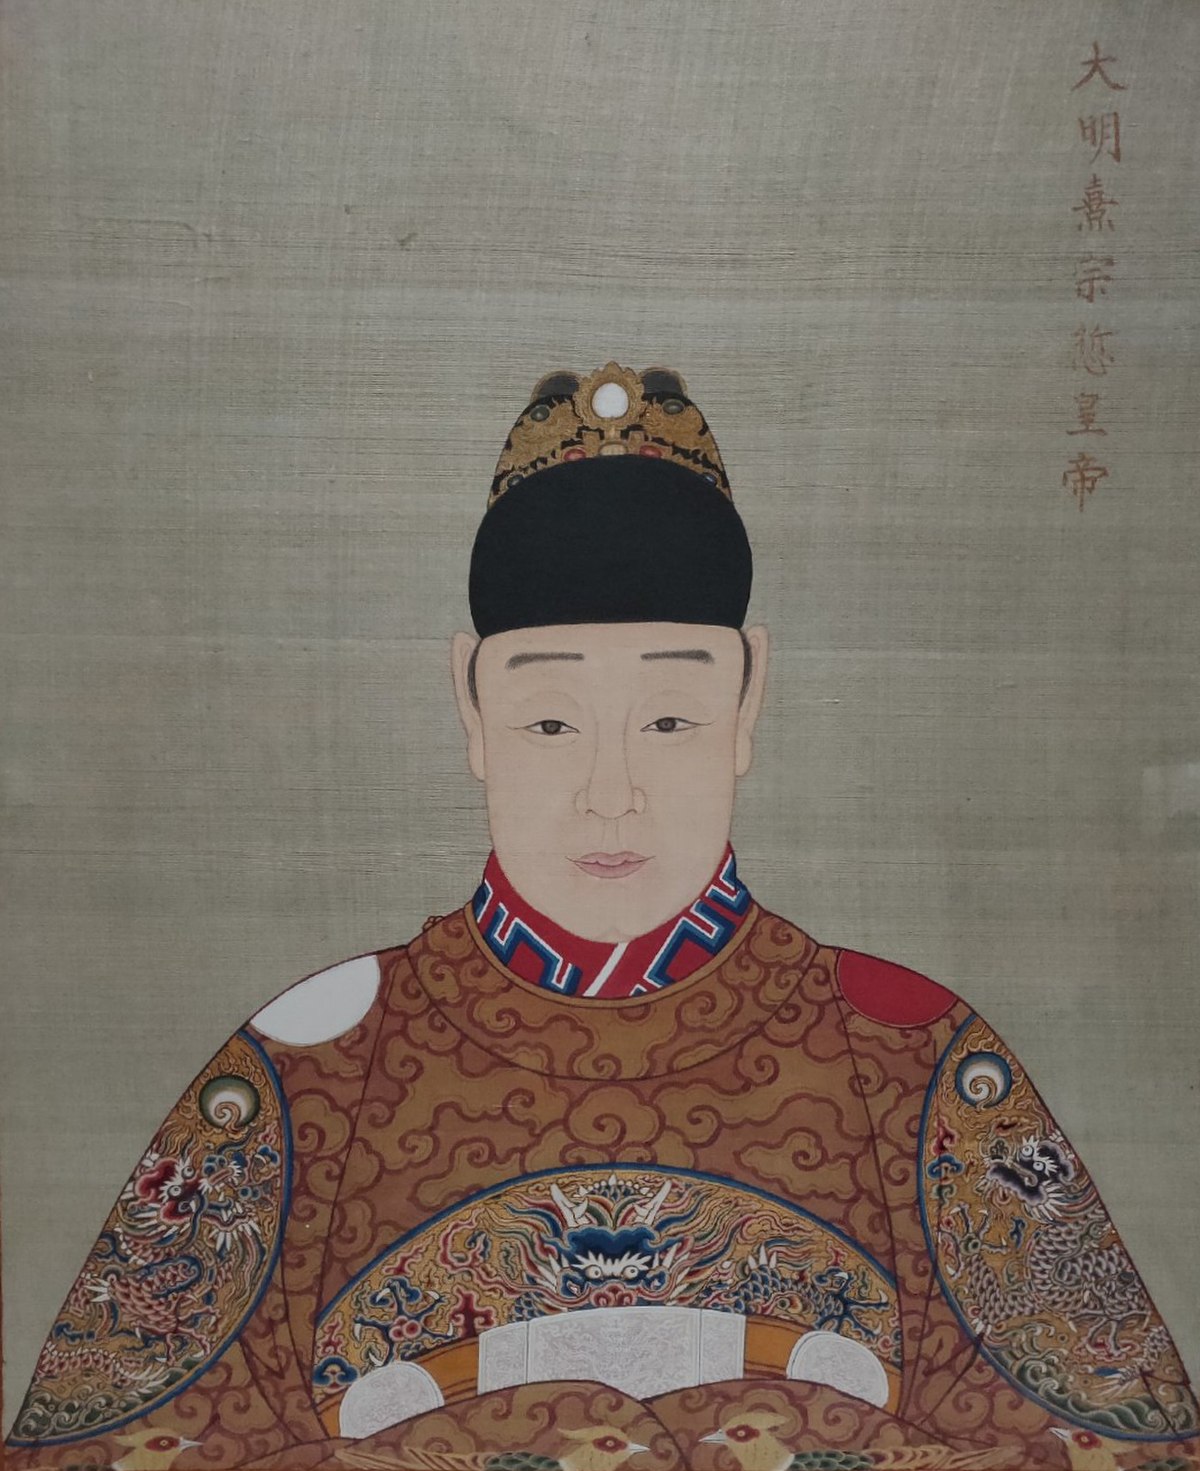 Reinado do Imperador Tianqi